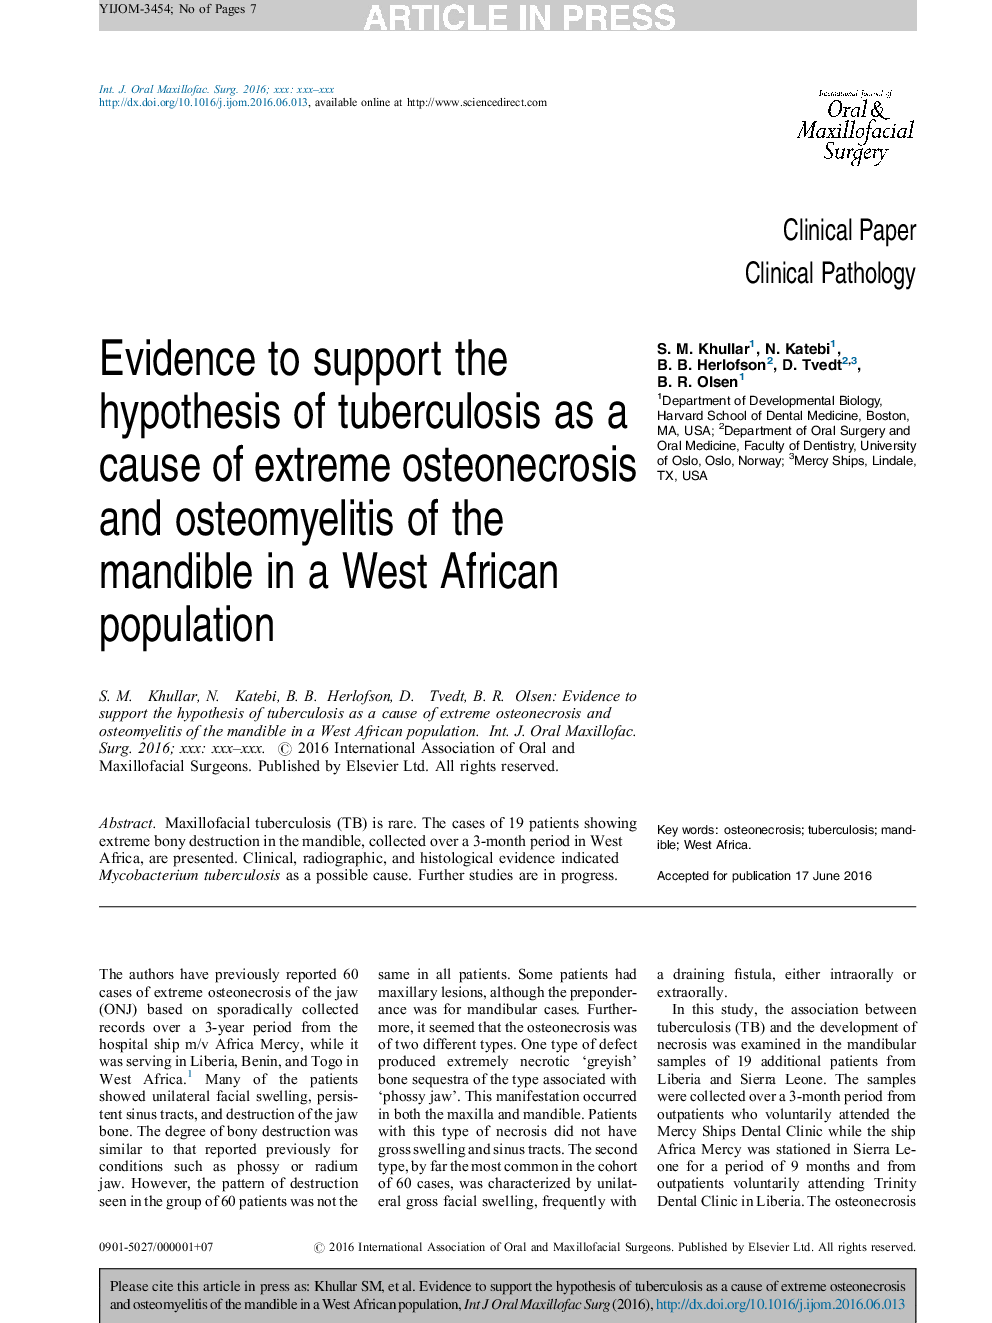 شواهد موجود برای حمایت از فرضیه سل به عنوان یک علت استئوآرکونه شدید و استئومیلیت ماندیبل در یک جمعیت غرب آفریقا 